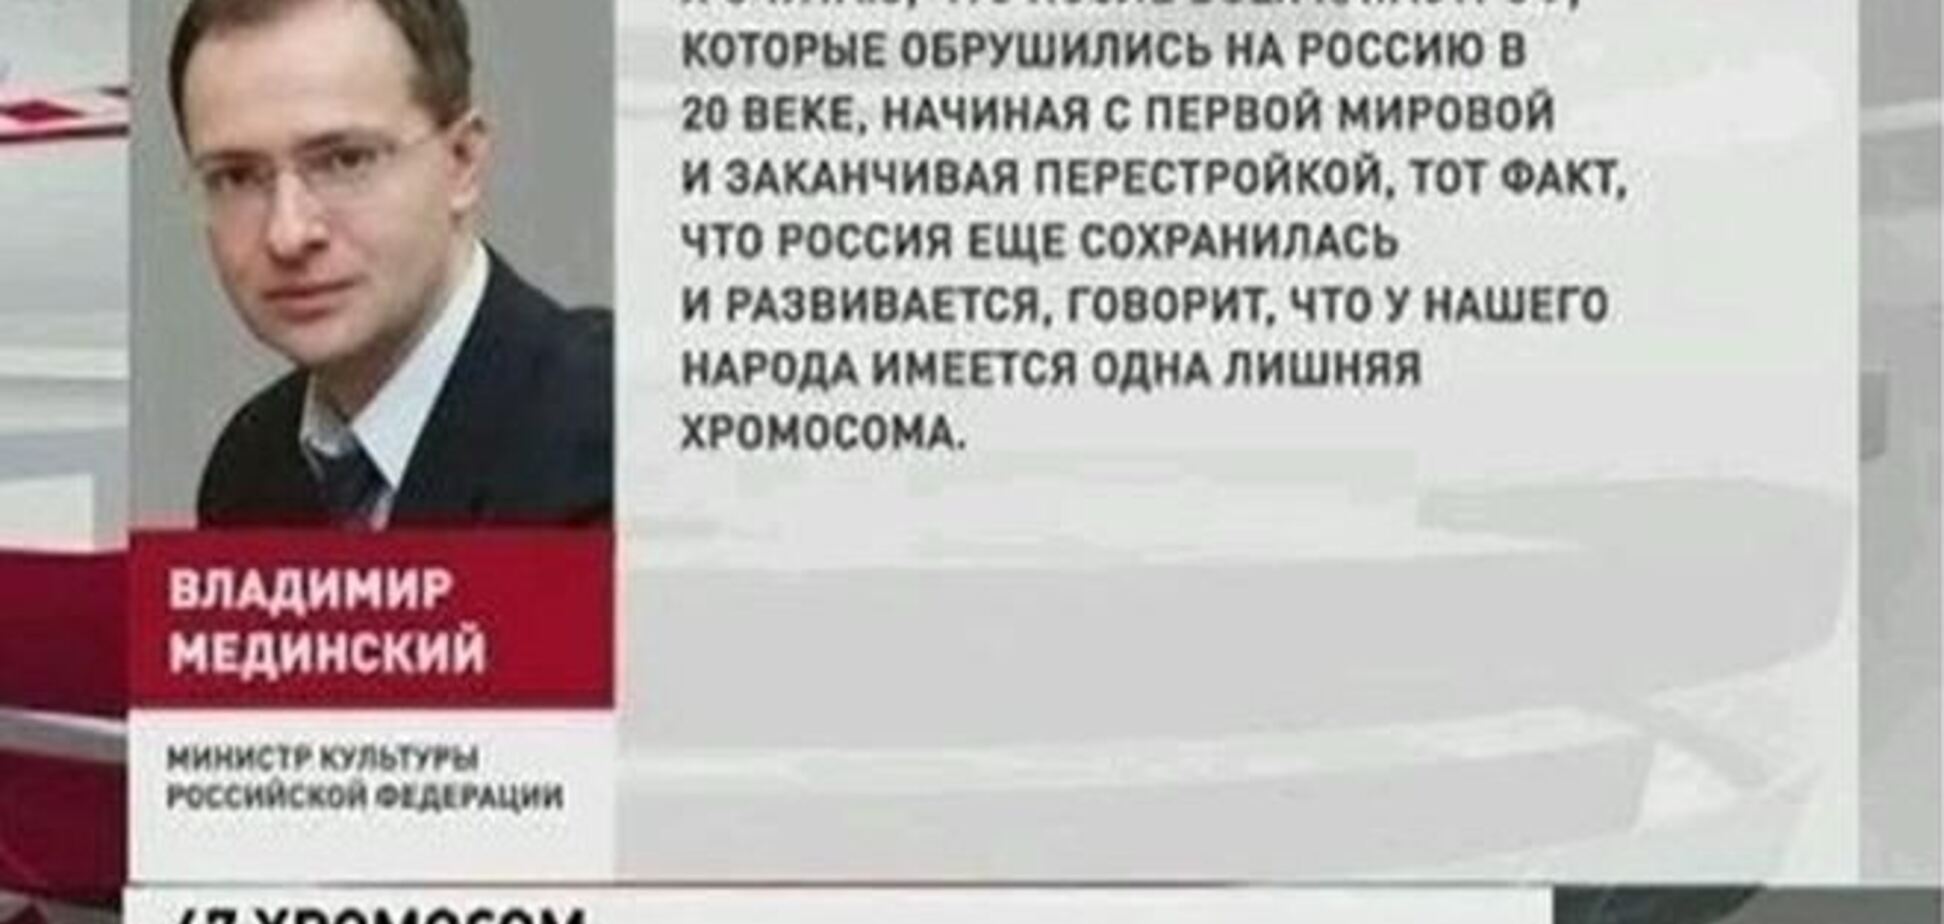 В соцсетях вспомнили 'хромосомное заявление' главы Минкульта РФ